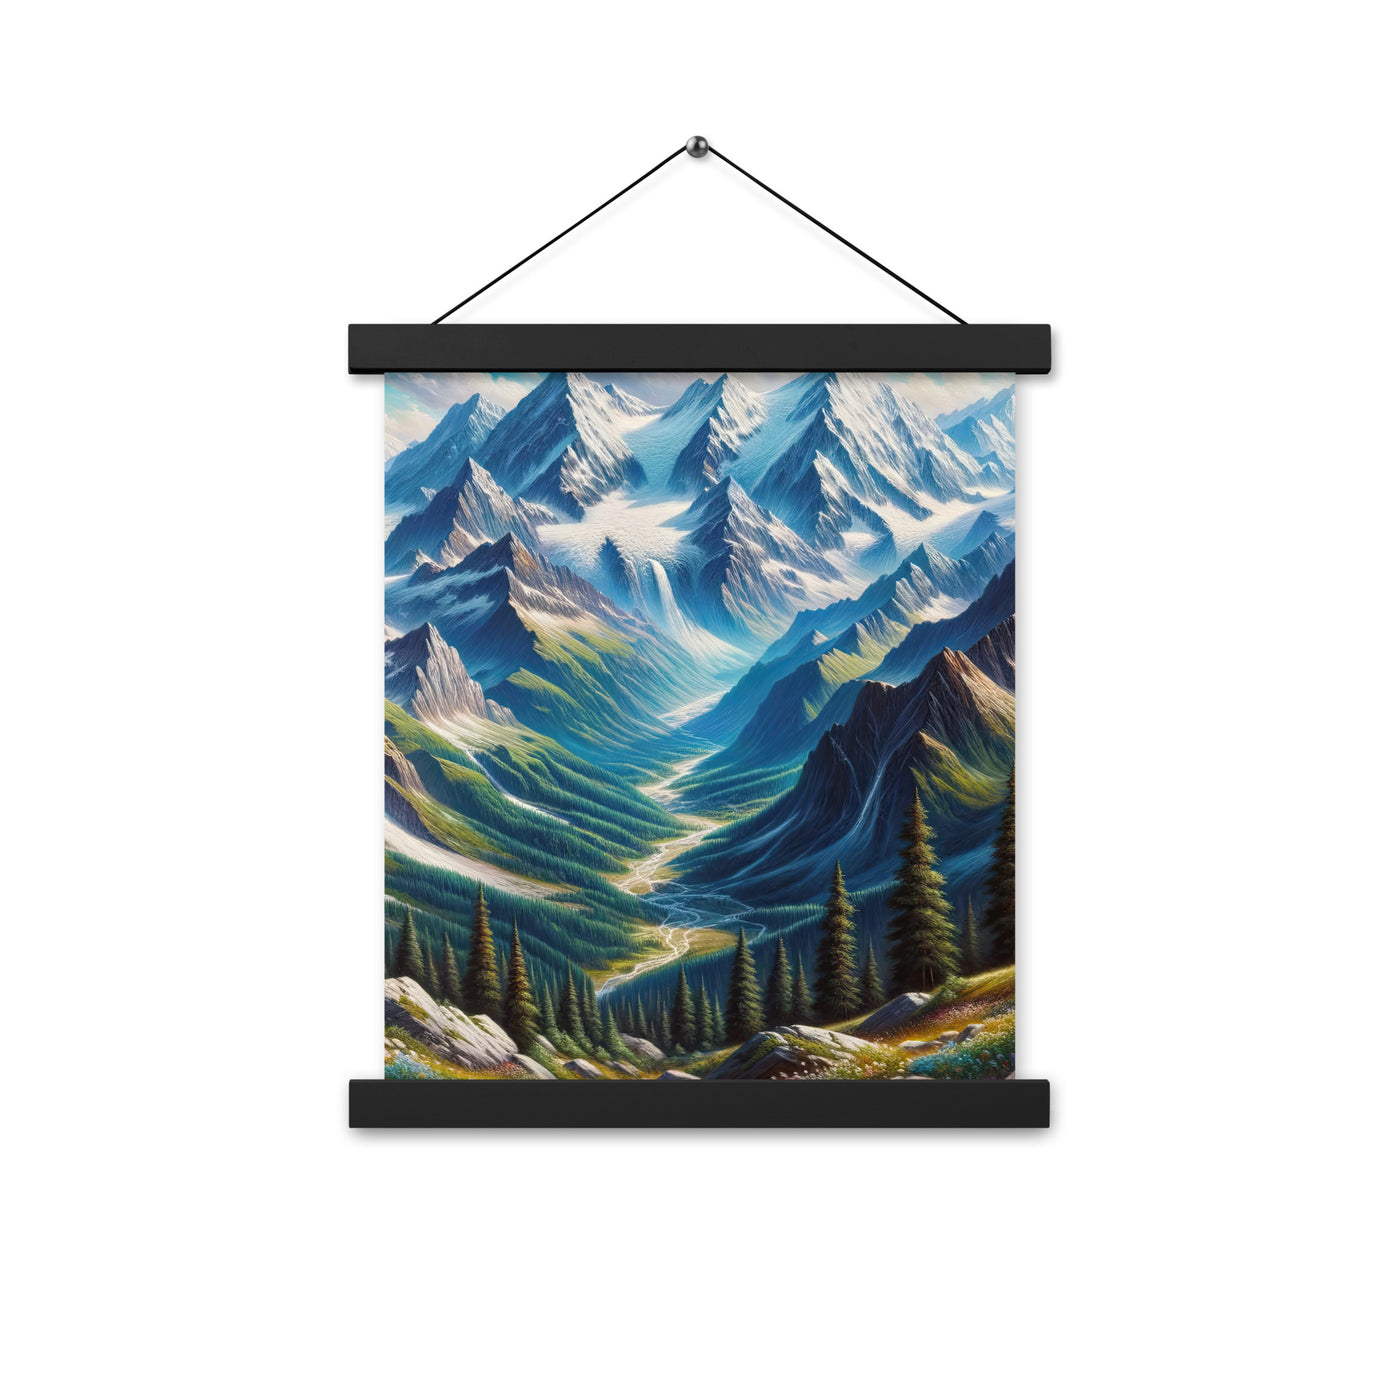 Panorama-Ölgemälde der Alpen mit schneebedeckten Gipfeln und schlängelnden Flusstälern - Premium Poster mit Aufhängung berge xxx yyy zzz 27.9 x 35.6 cm